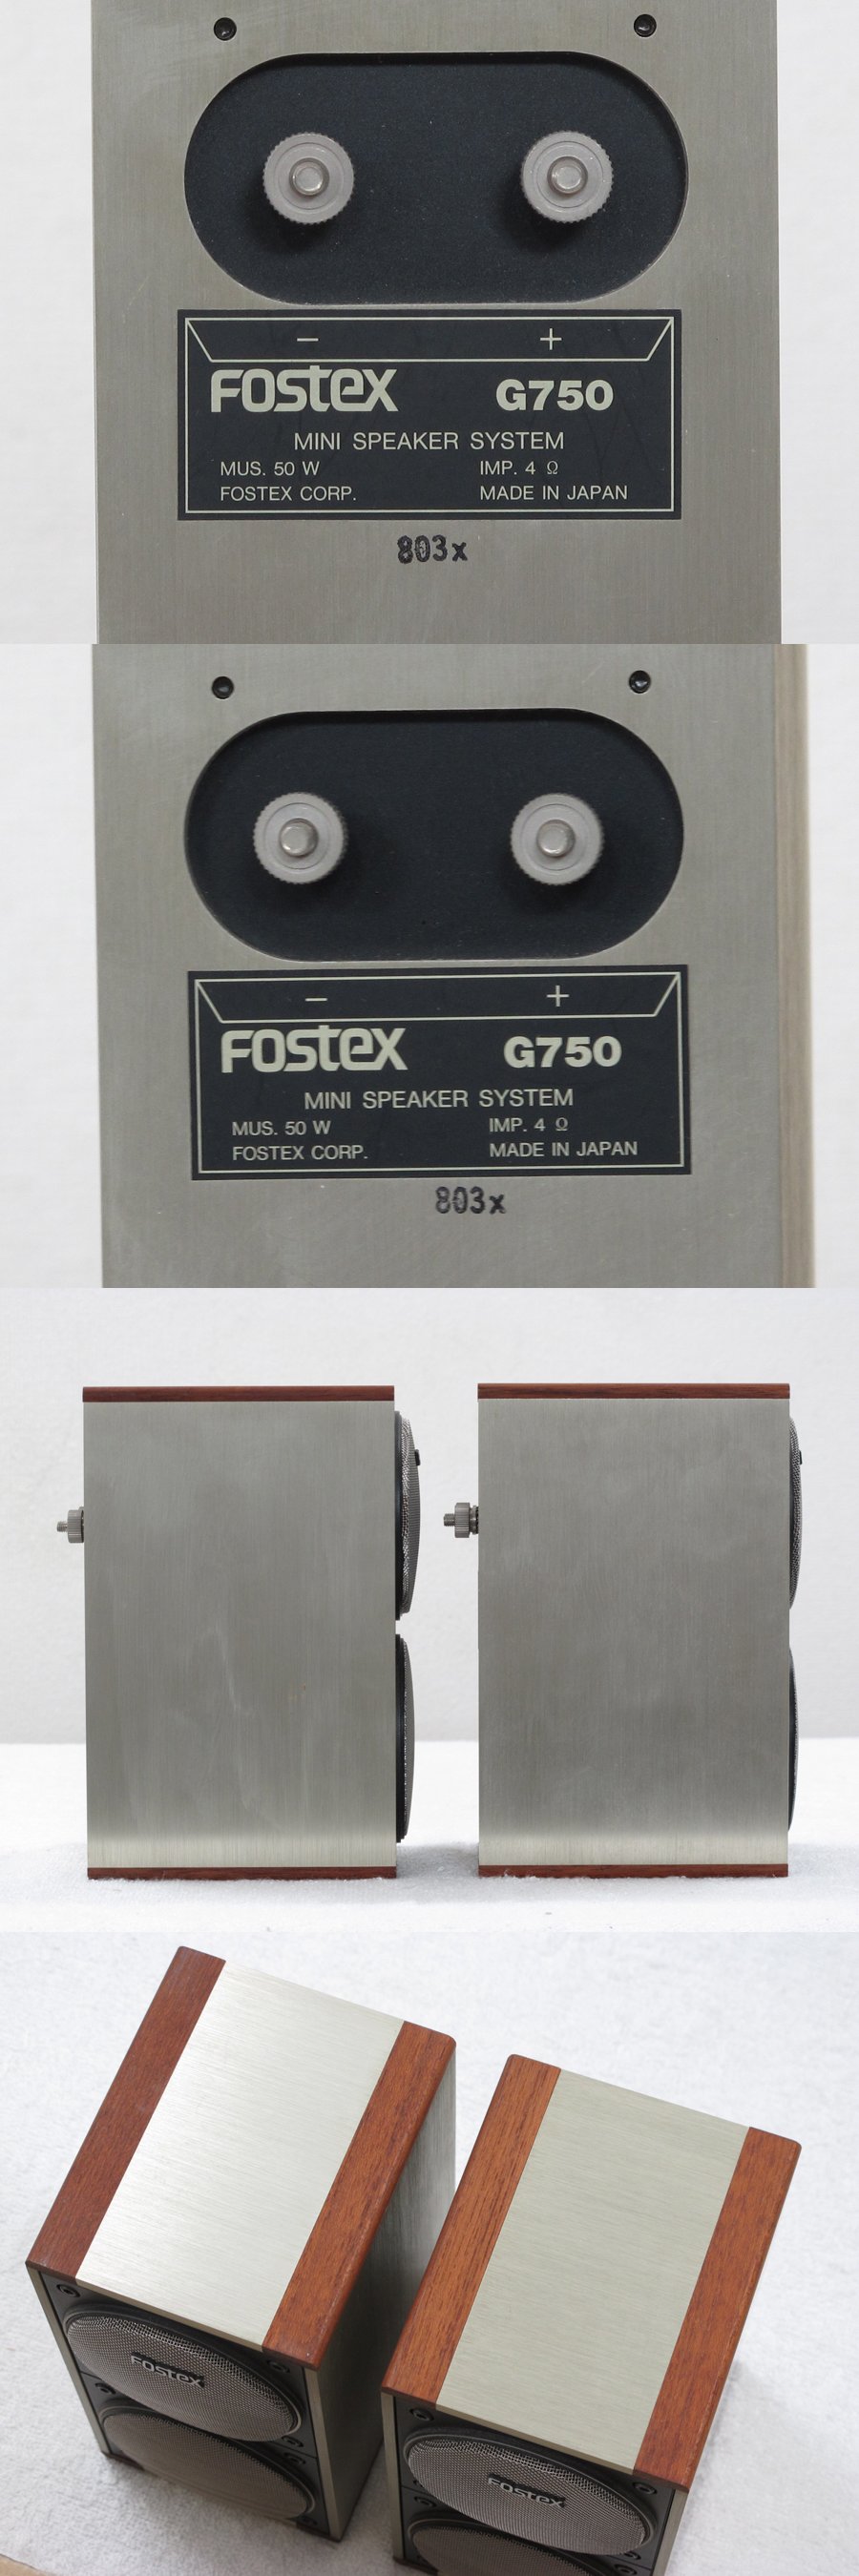 フォステクス FOSTEX G750 スピーカー @31416 / 中古オーディオ買取 